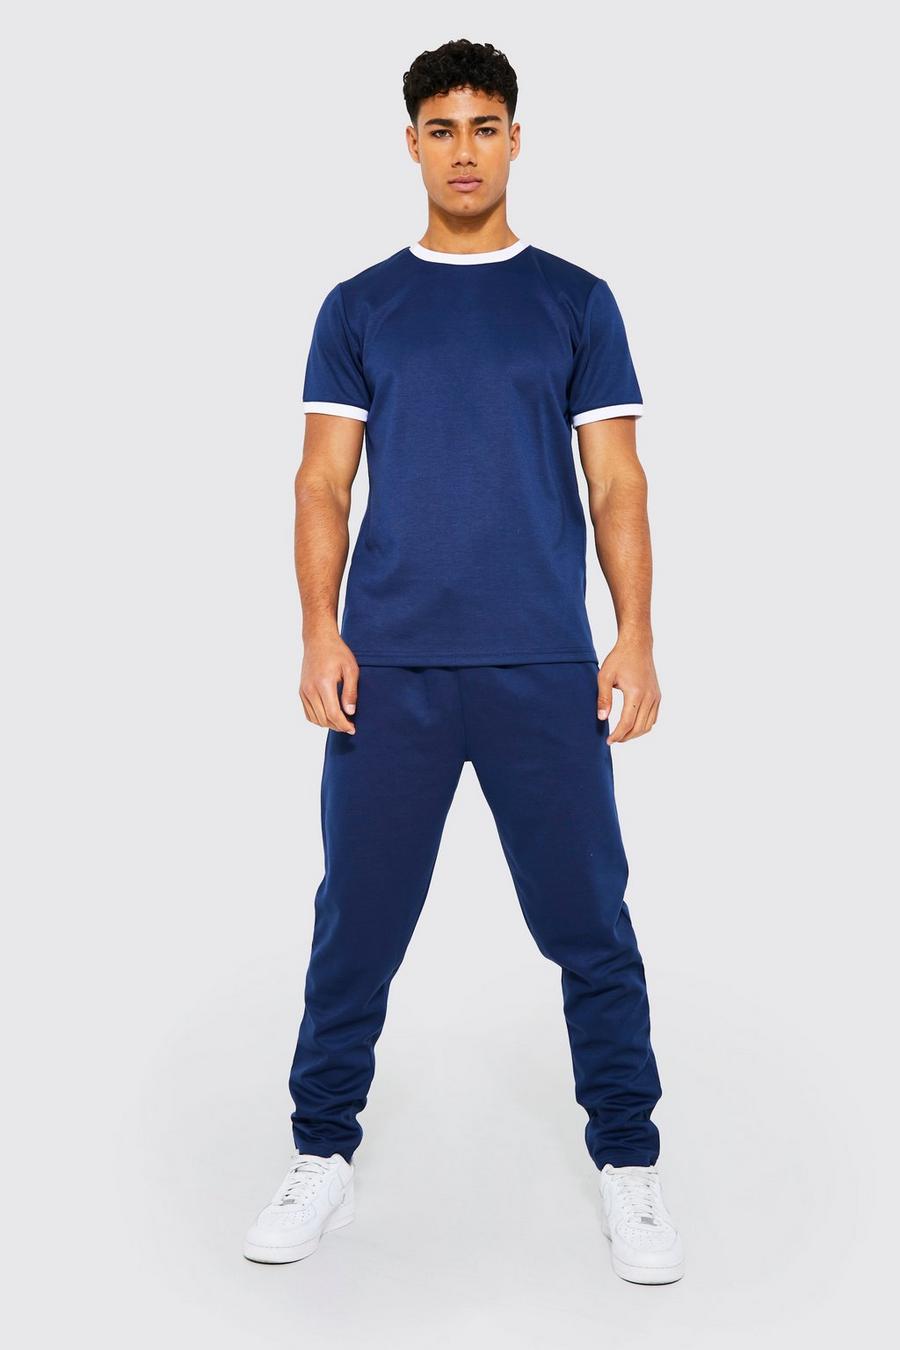 Conjunto de pantalón deportivo y camiseta ajustada con ribetes en los filos, Navy azul marino